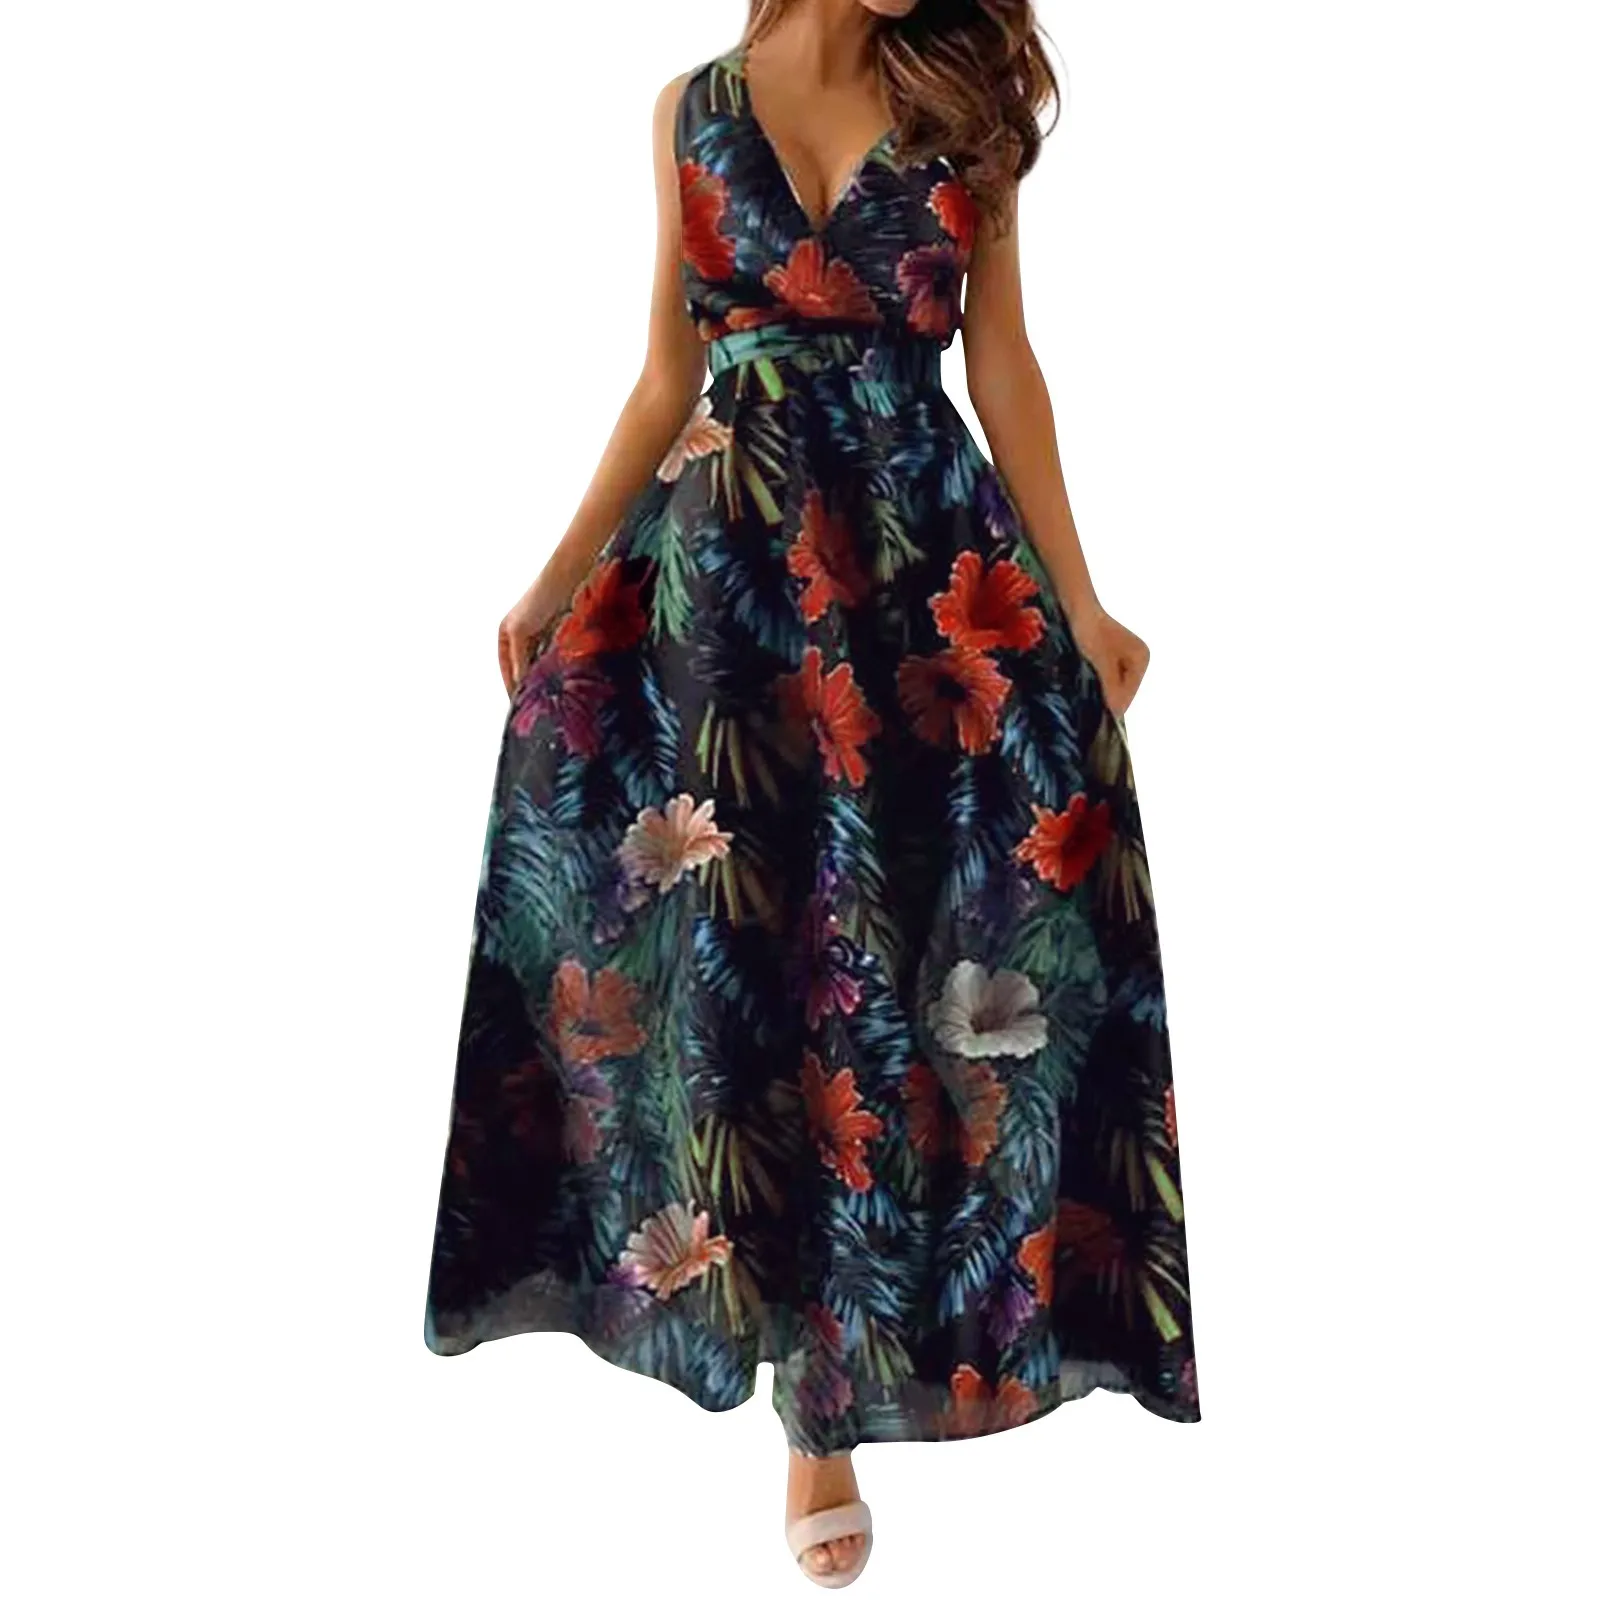 

Платье женское длинное с цветочным принтом, повседневное пляжное макси-платье в стиле бохо, с V-образным вырезом, без рукавов, на завязках, для отпуска, на лето